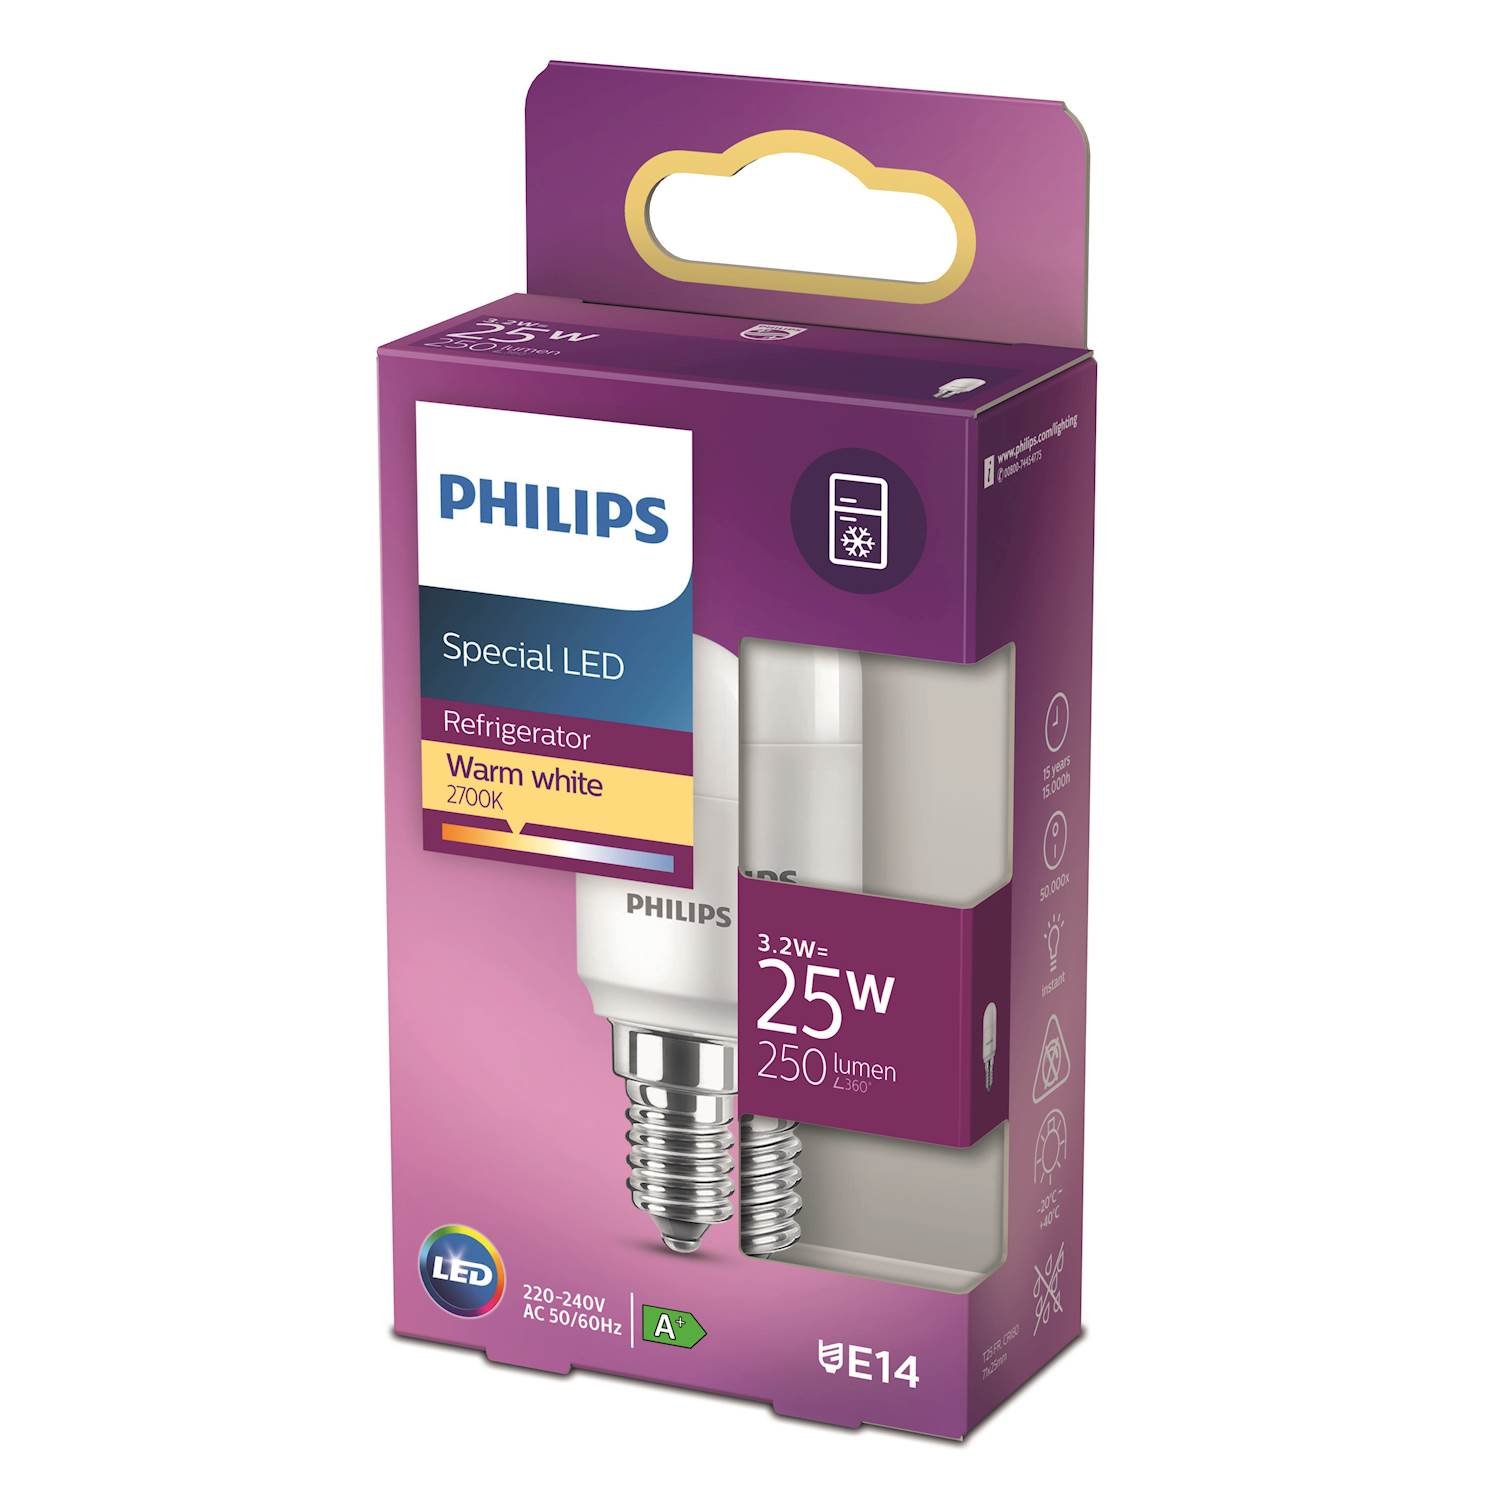 Philips LED päron 25w e14 nd